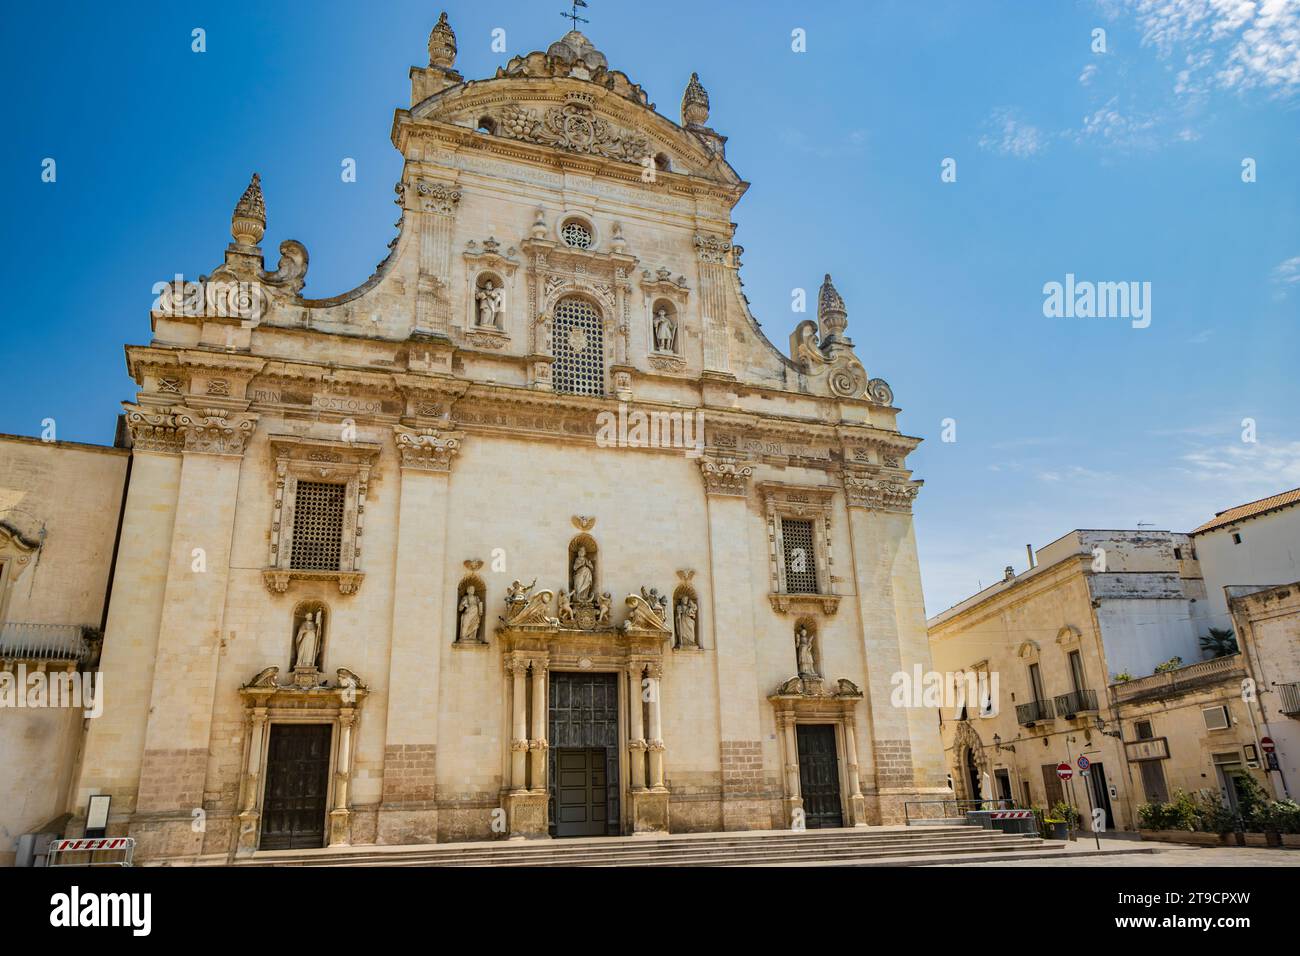 Galatina, Lecce, Apulien, Italien. Altes Dorf in Salento. Die wundervolle Kirche der Heiligen Peter und Paul, im barocken Stil. Viele Marmorstatuen und s Stockfoto